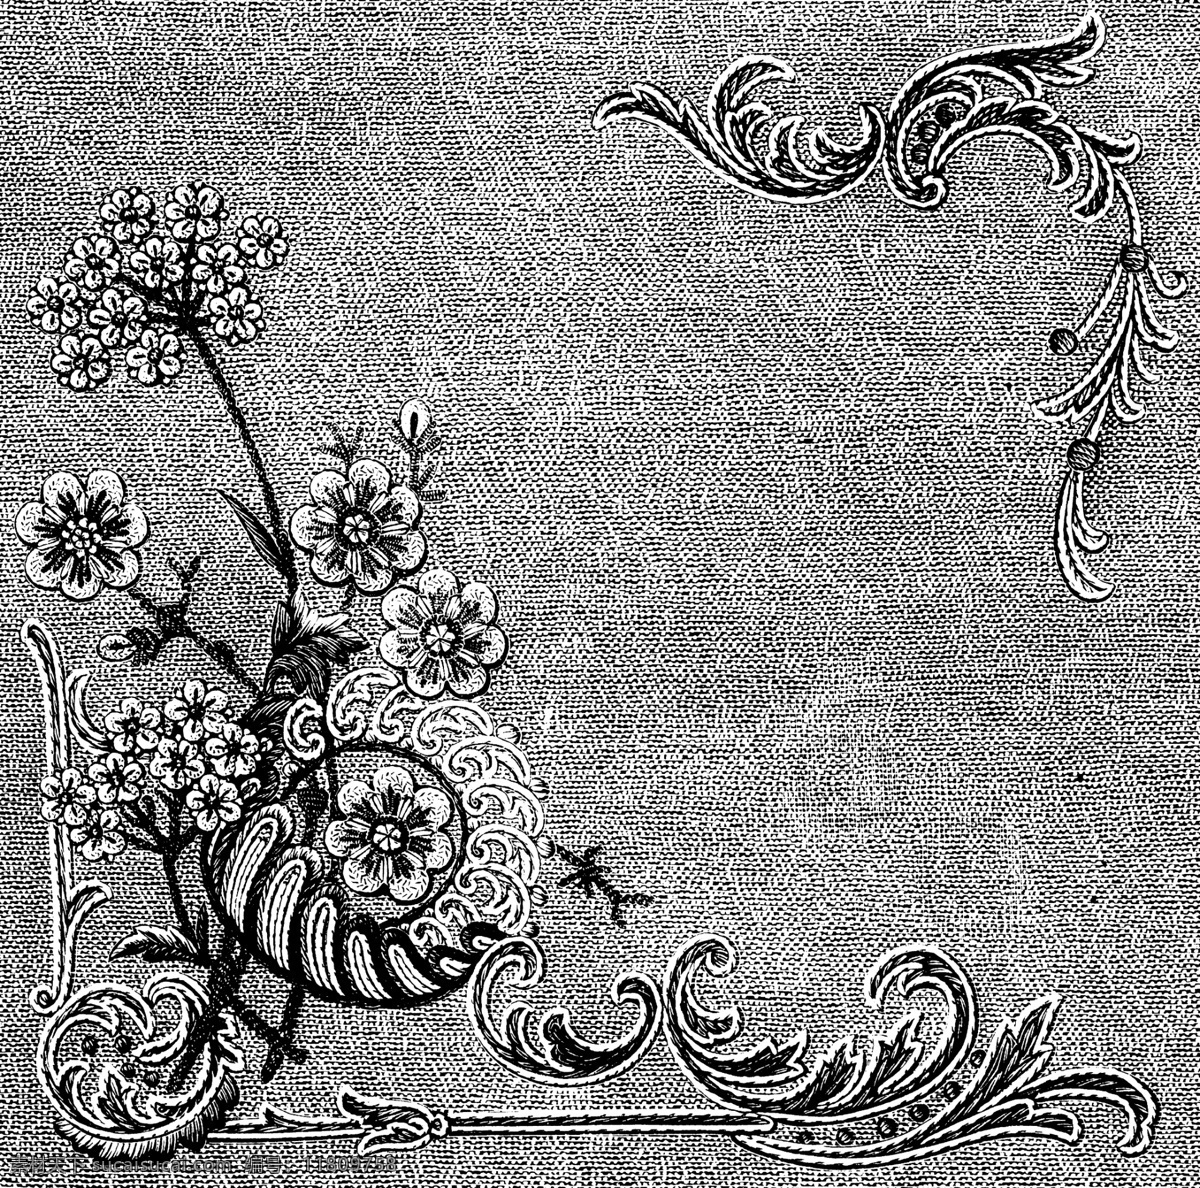 黑白 花边 植物 纹样 线条 花卉 服装边饰 刺绣 传统文化 文化艺术